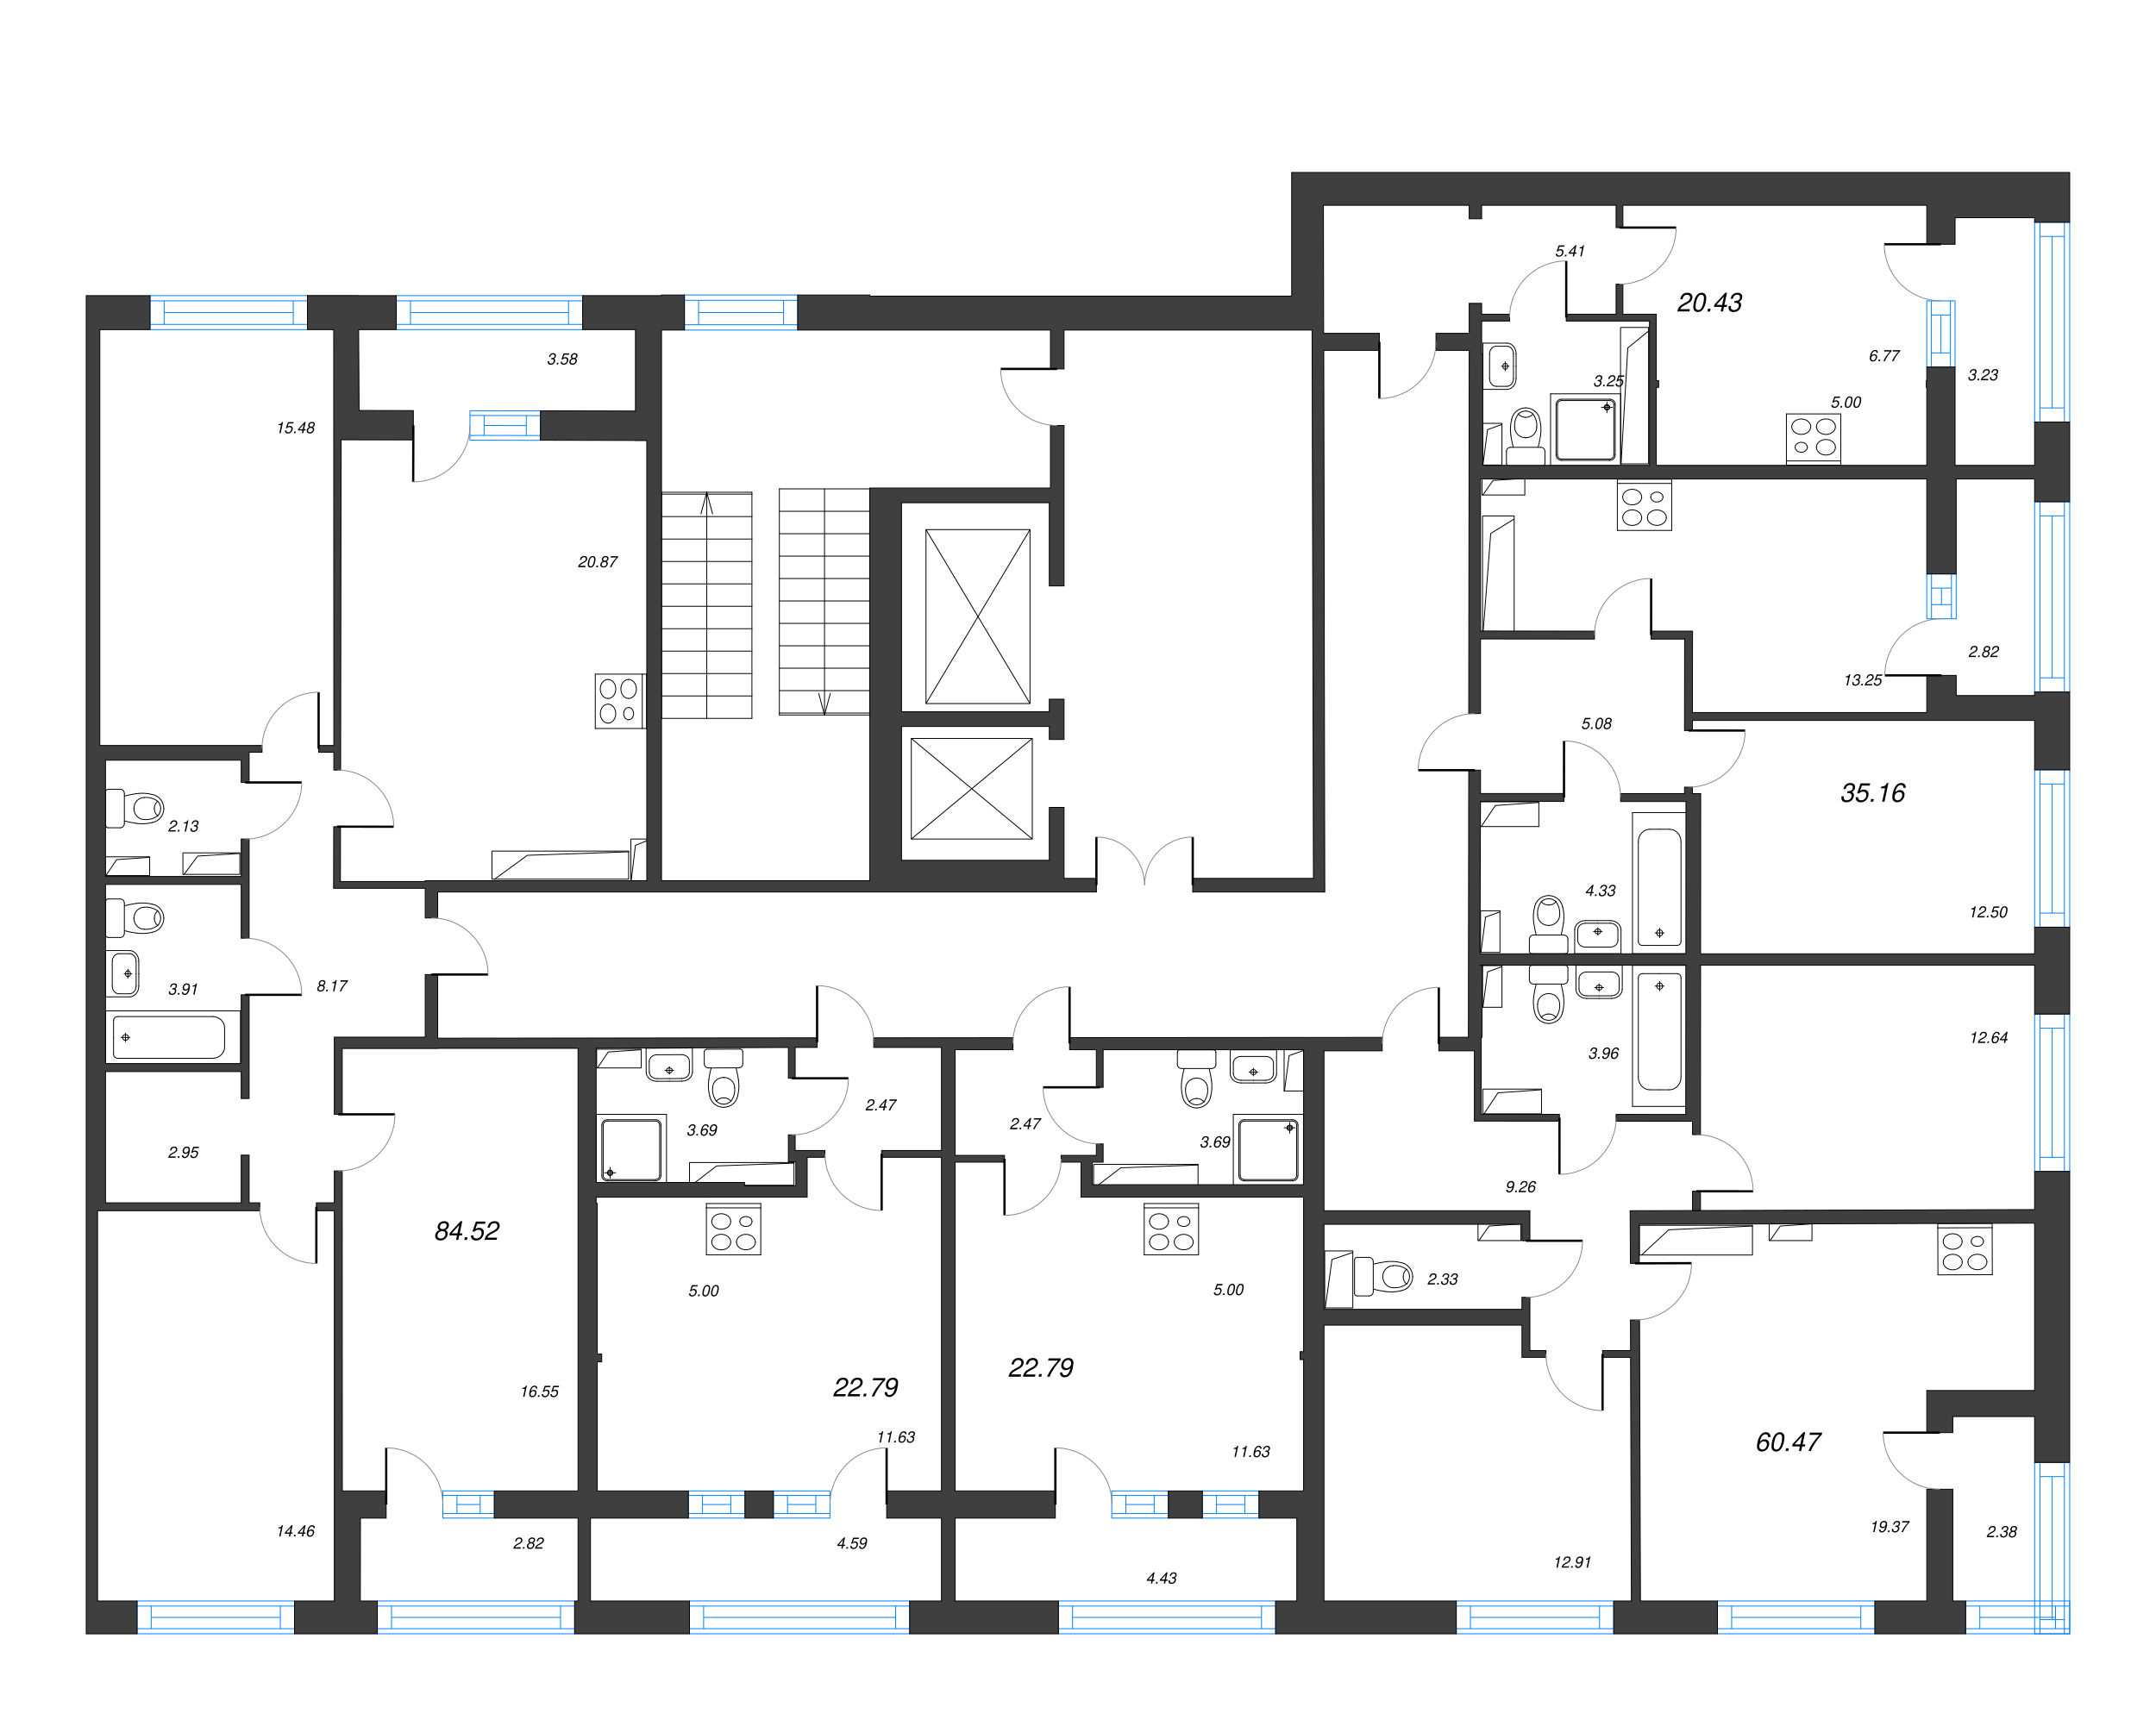 Квартира-студия, 20.43 м² в ЖК "Б15" - планировка этажа